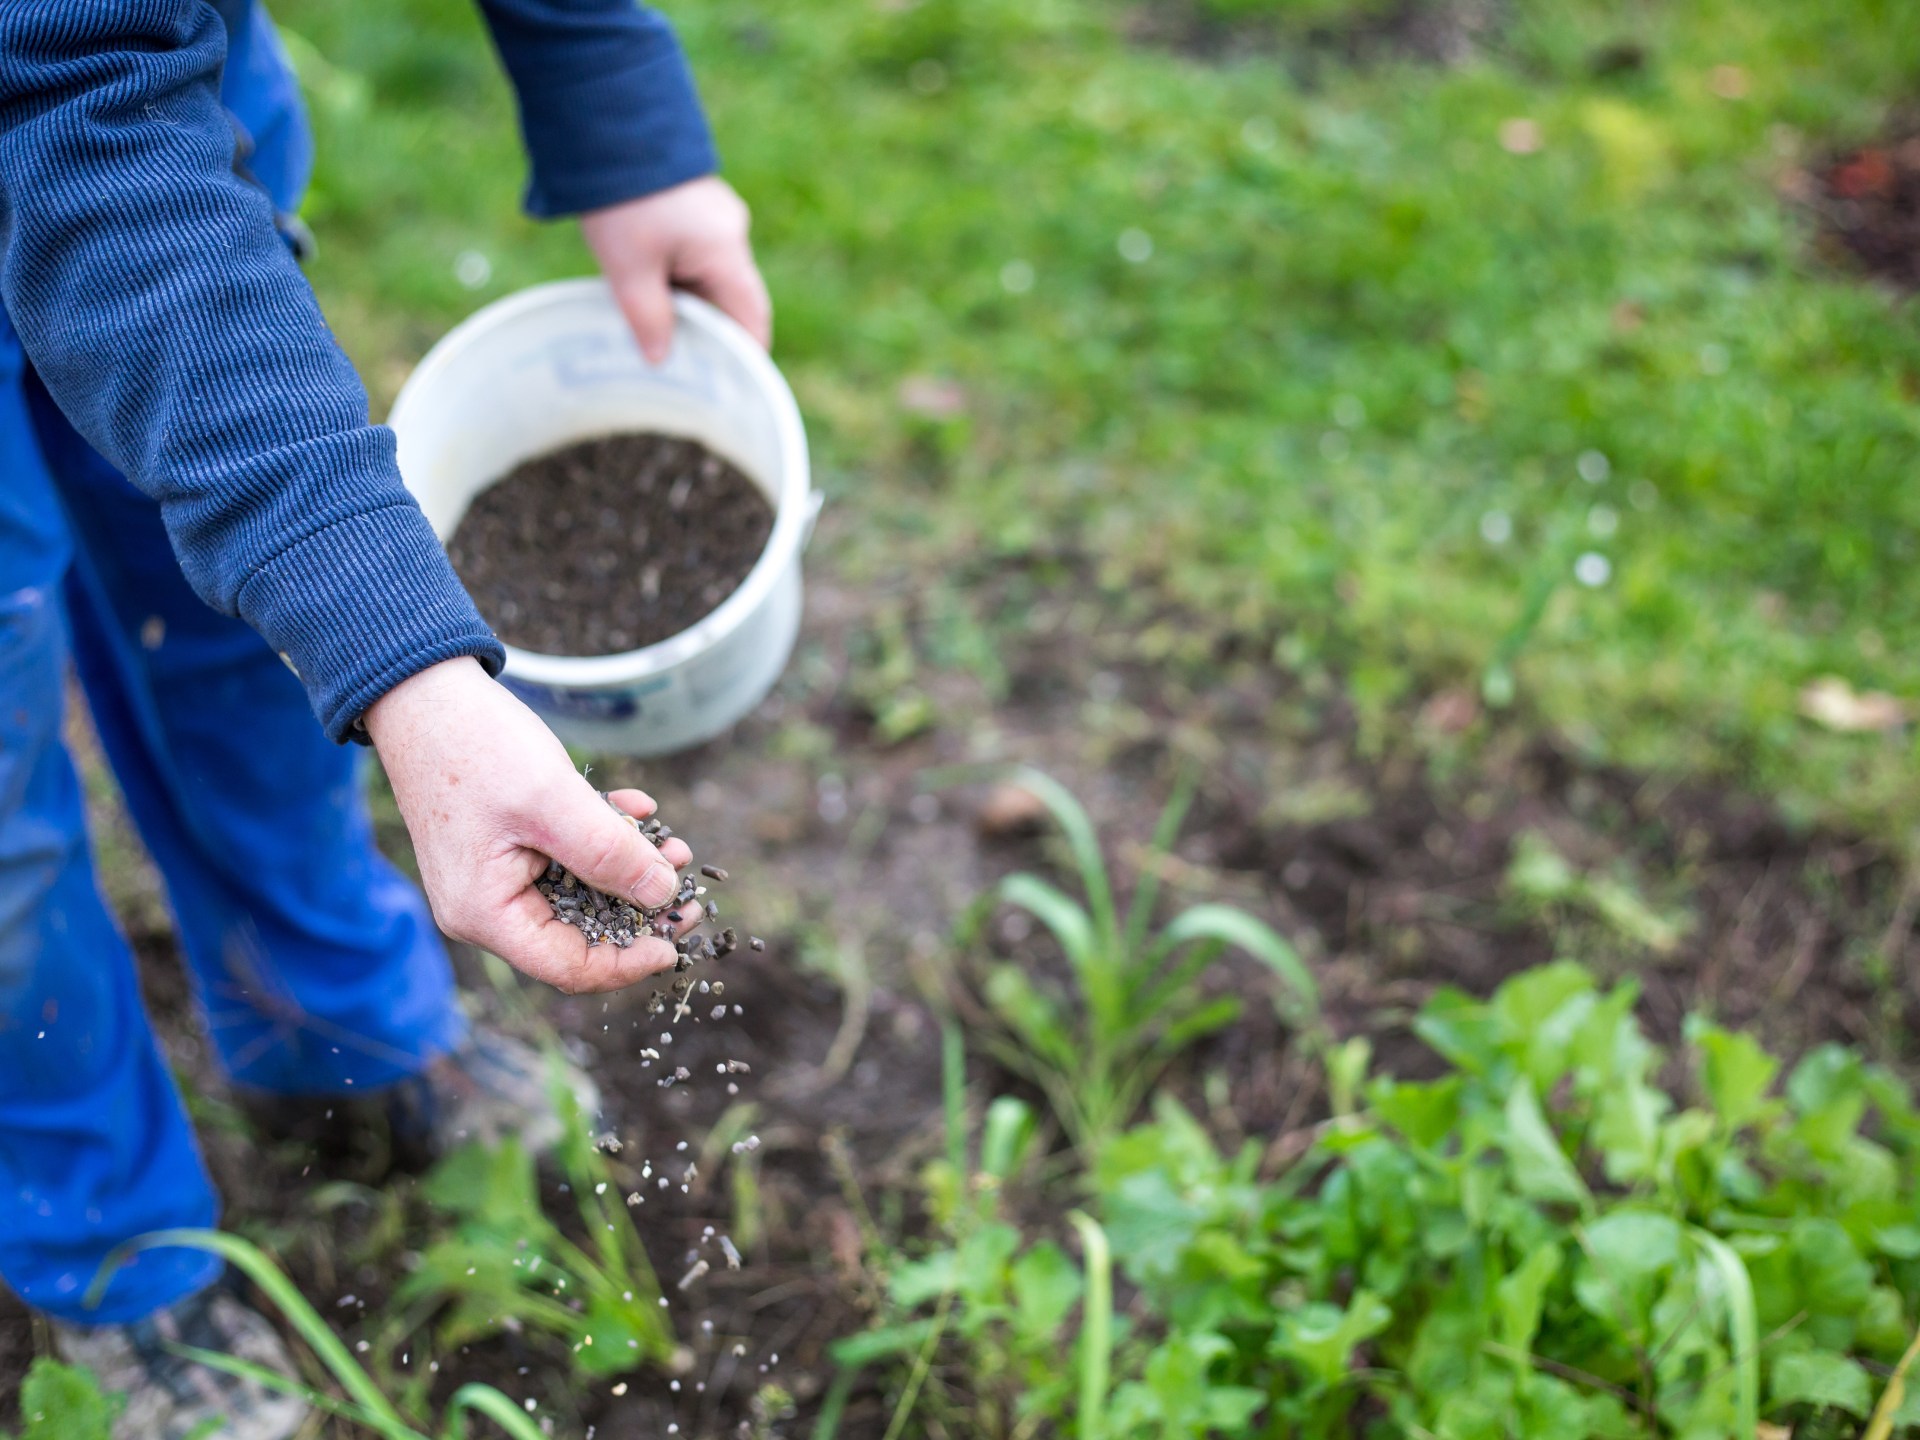 نقص البوتاسيوم في التربة يهدد الأمن الغذائي العالمي | علوم – البوكس نيوز